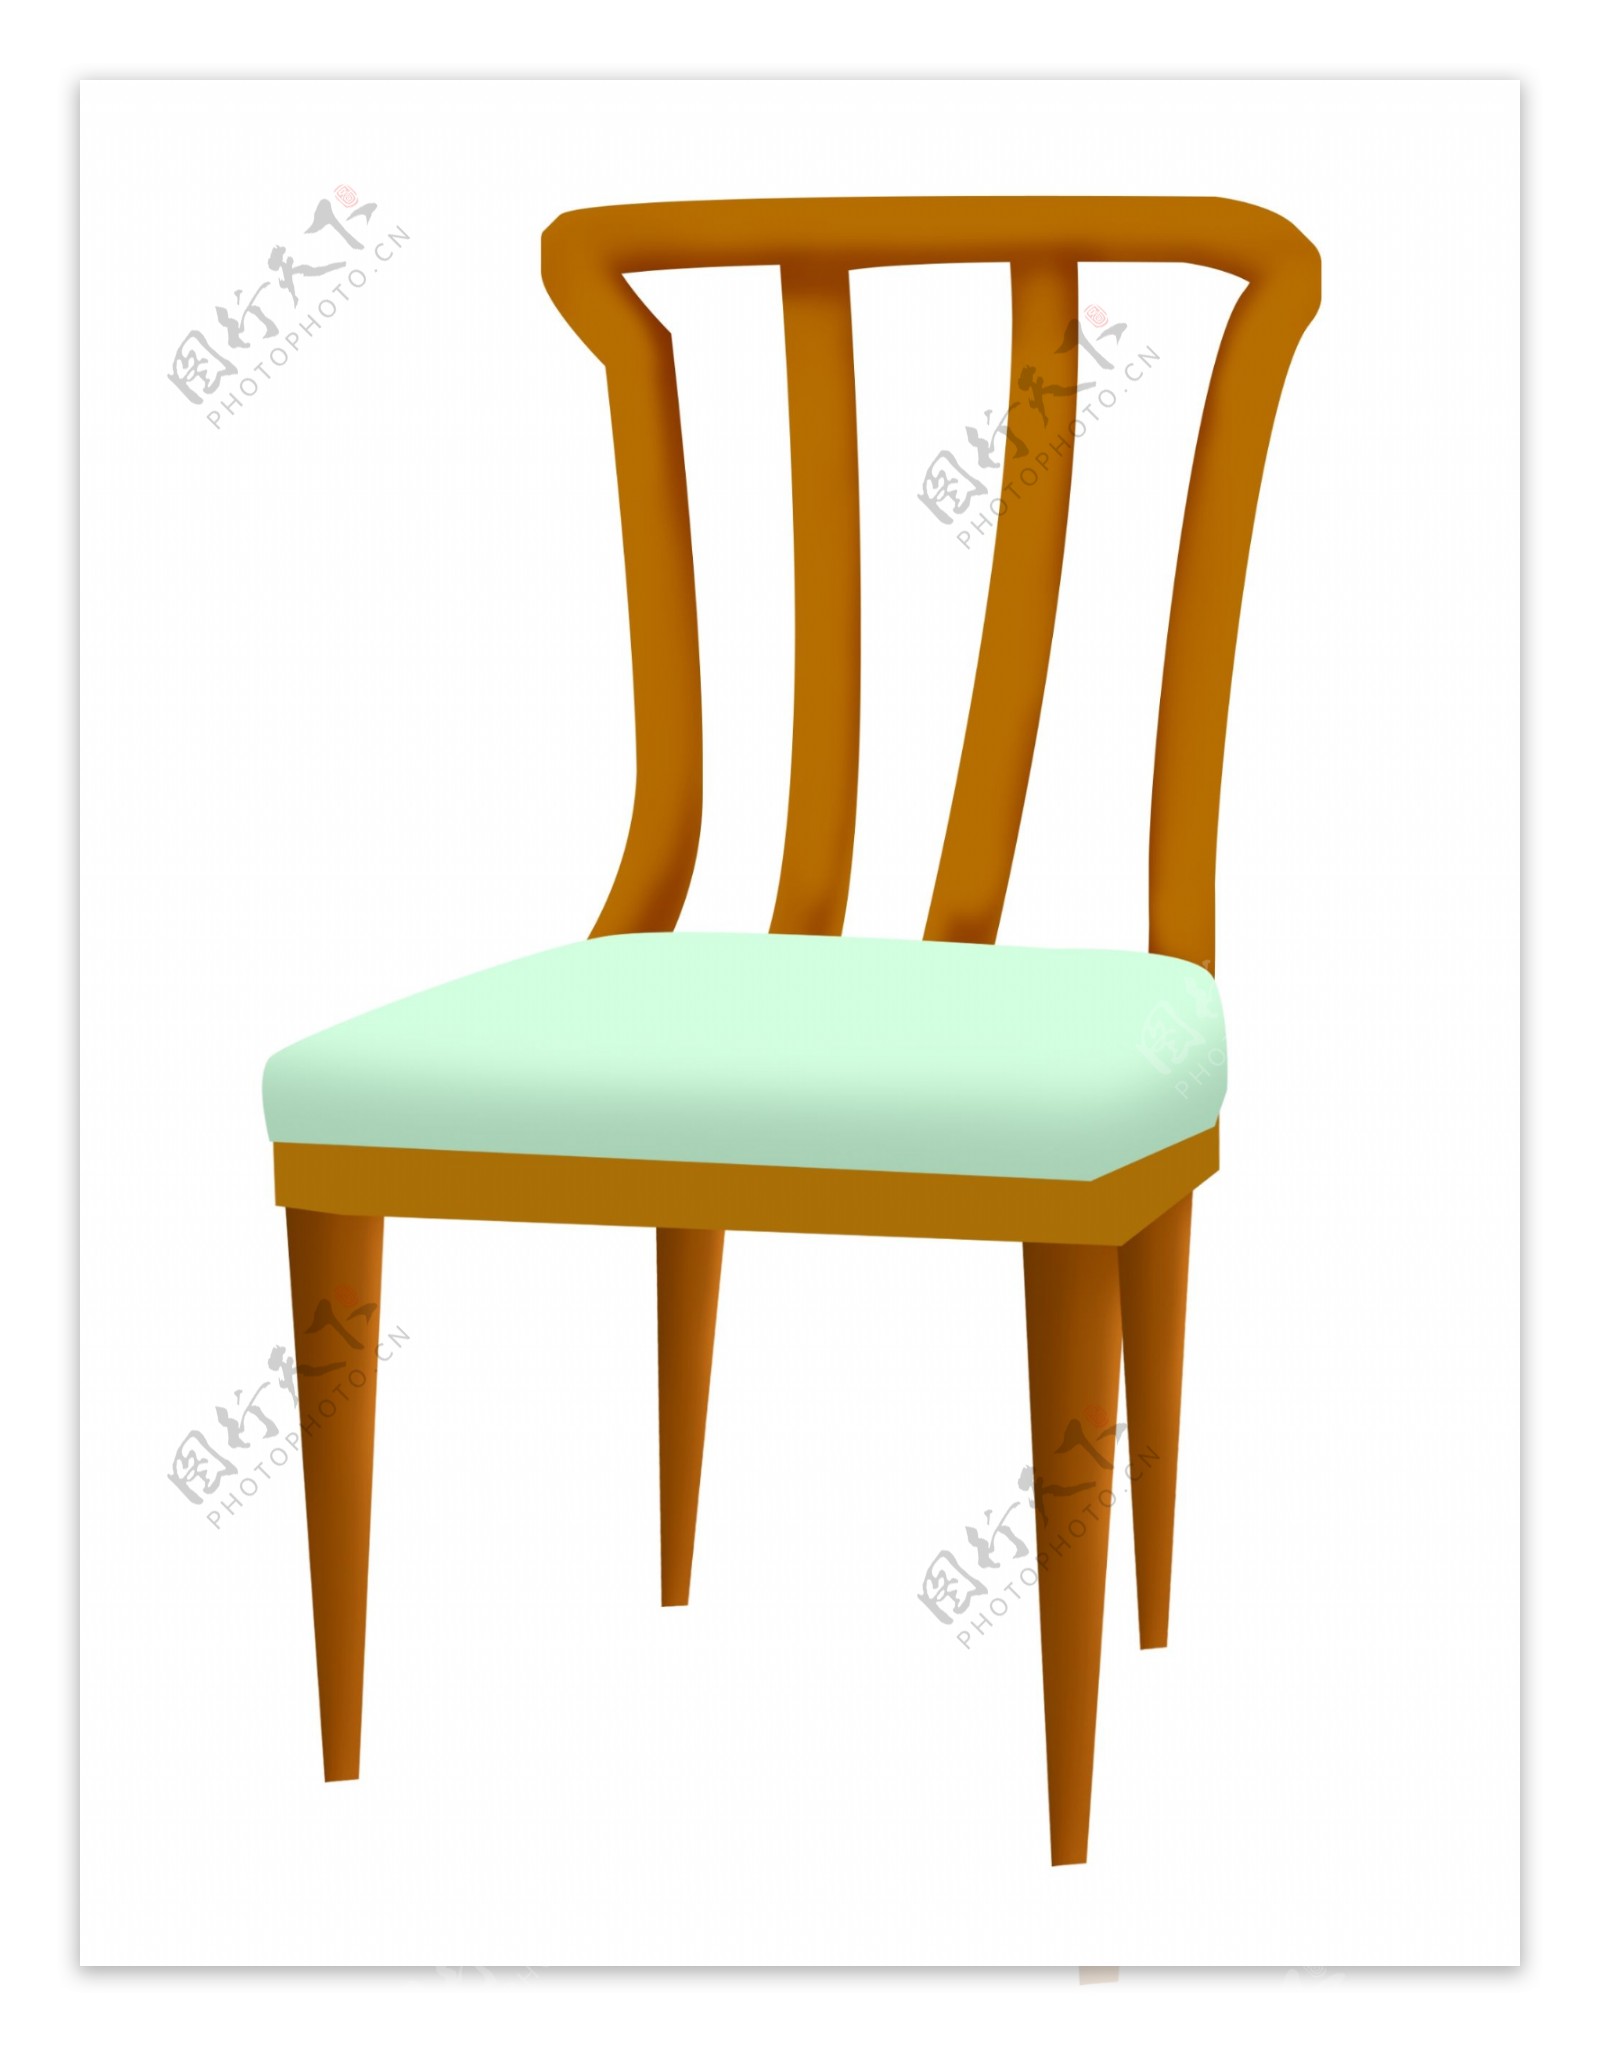 浅绿色的椅子插画